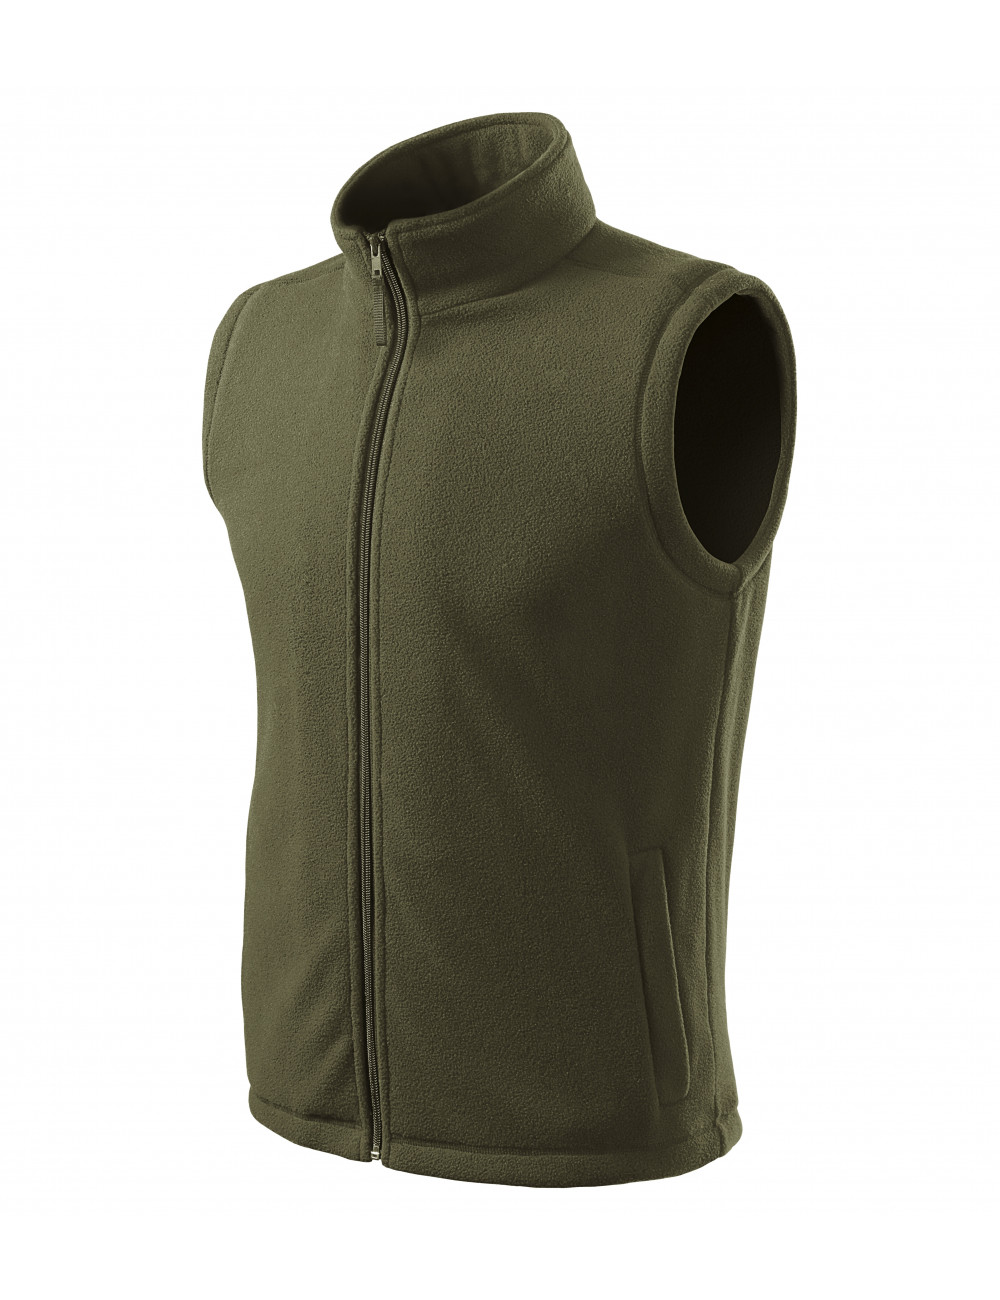 Unisex fleece vest next 518 military Adler Rimeck